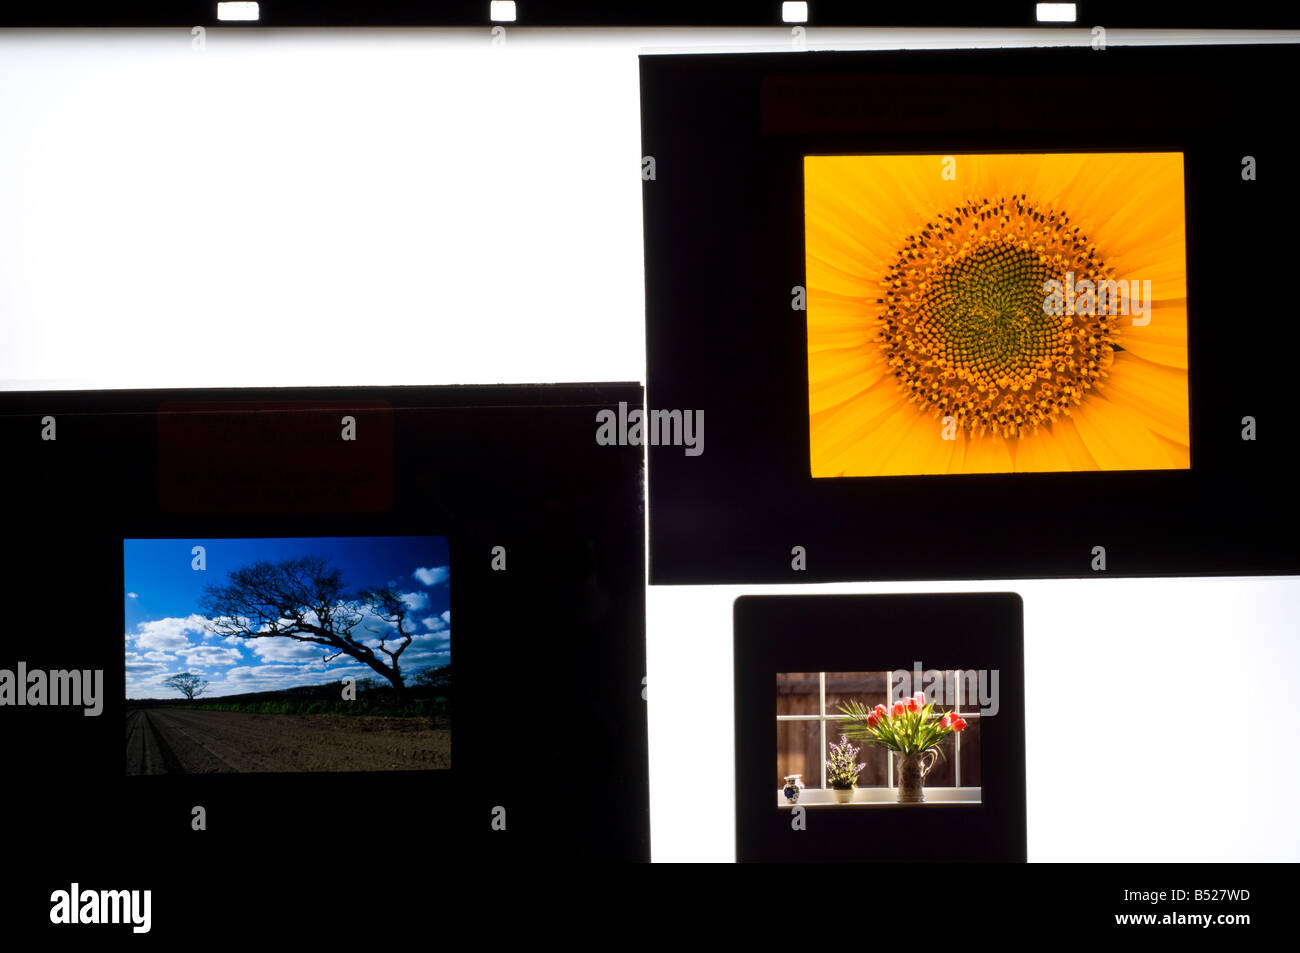 Folien auf einem Leuchtkasten zeigt die verschiedenen Filmformate von 35mm, 6x4.5cm und 6x7cm positiv (Folie)-film Stockfoto